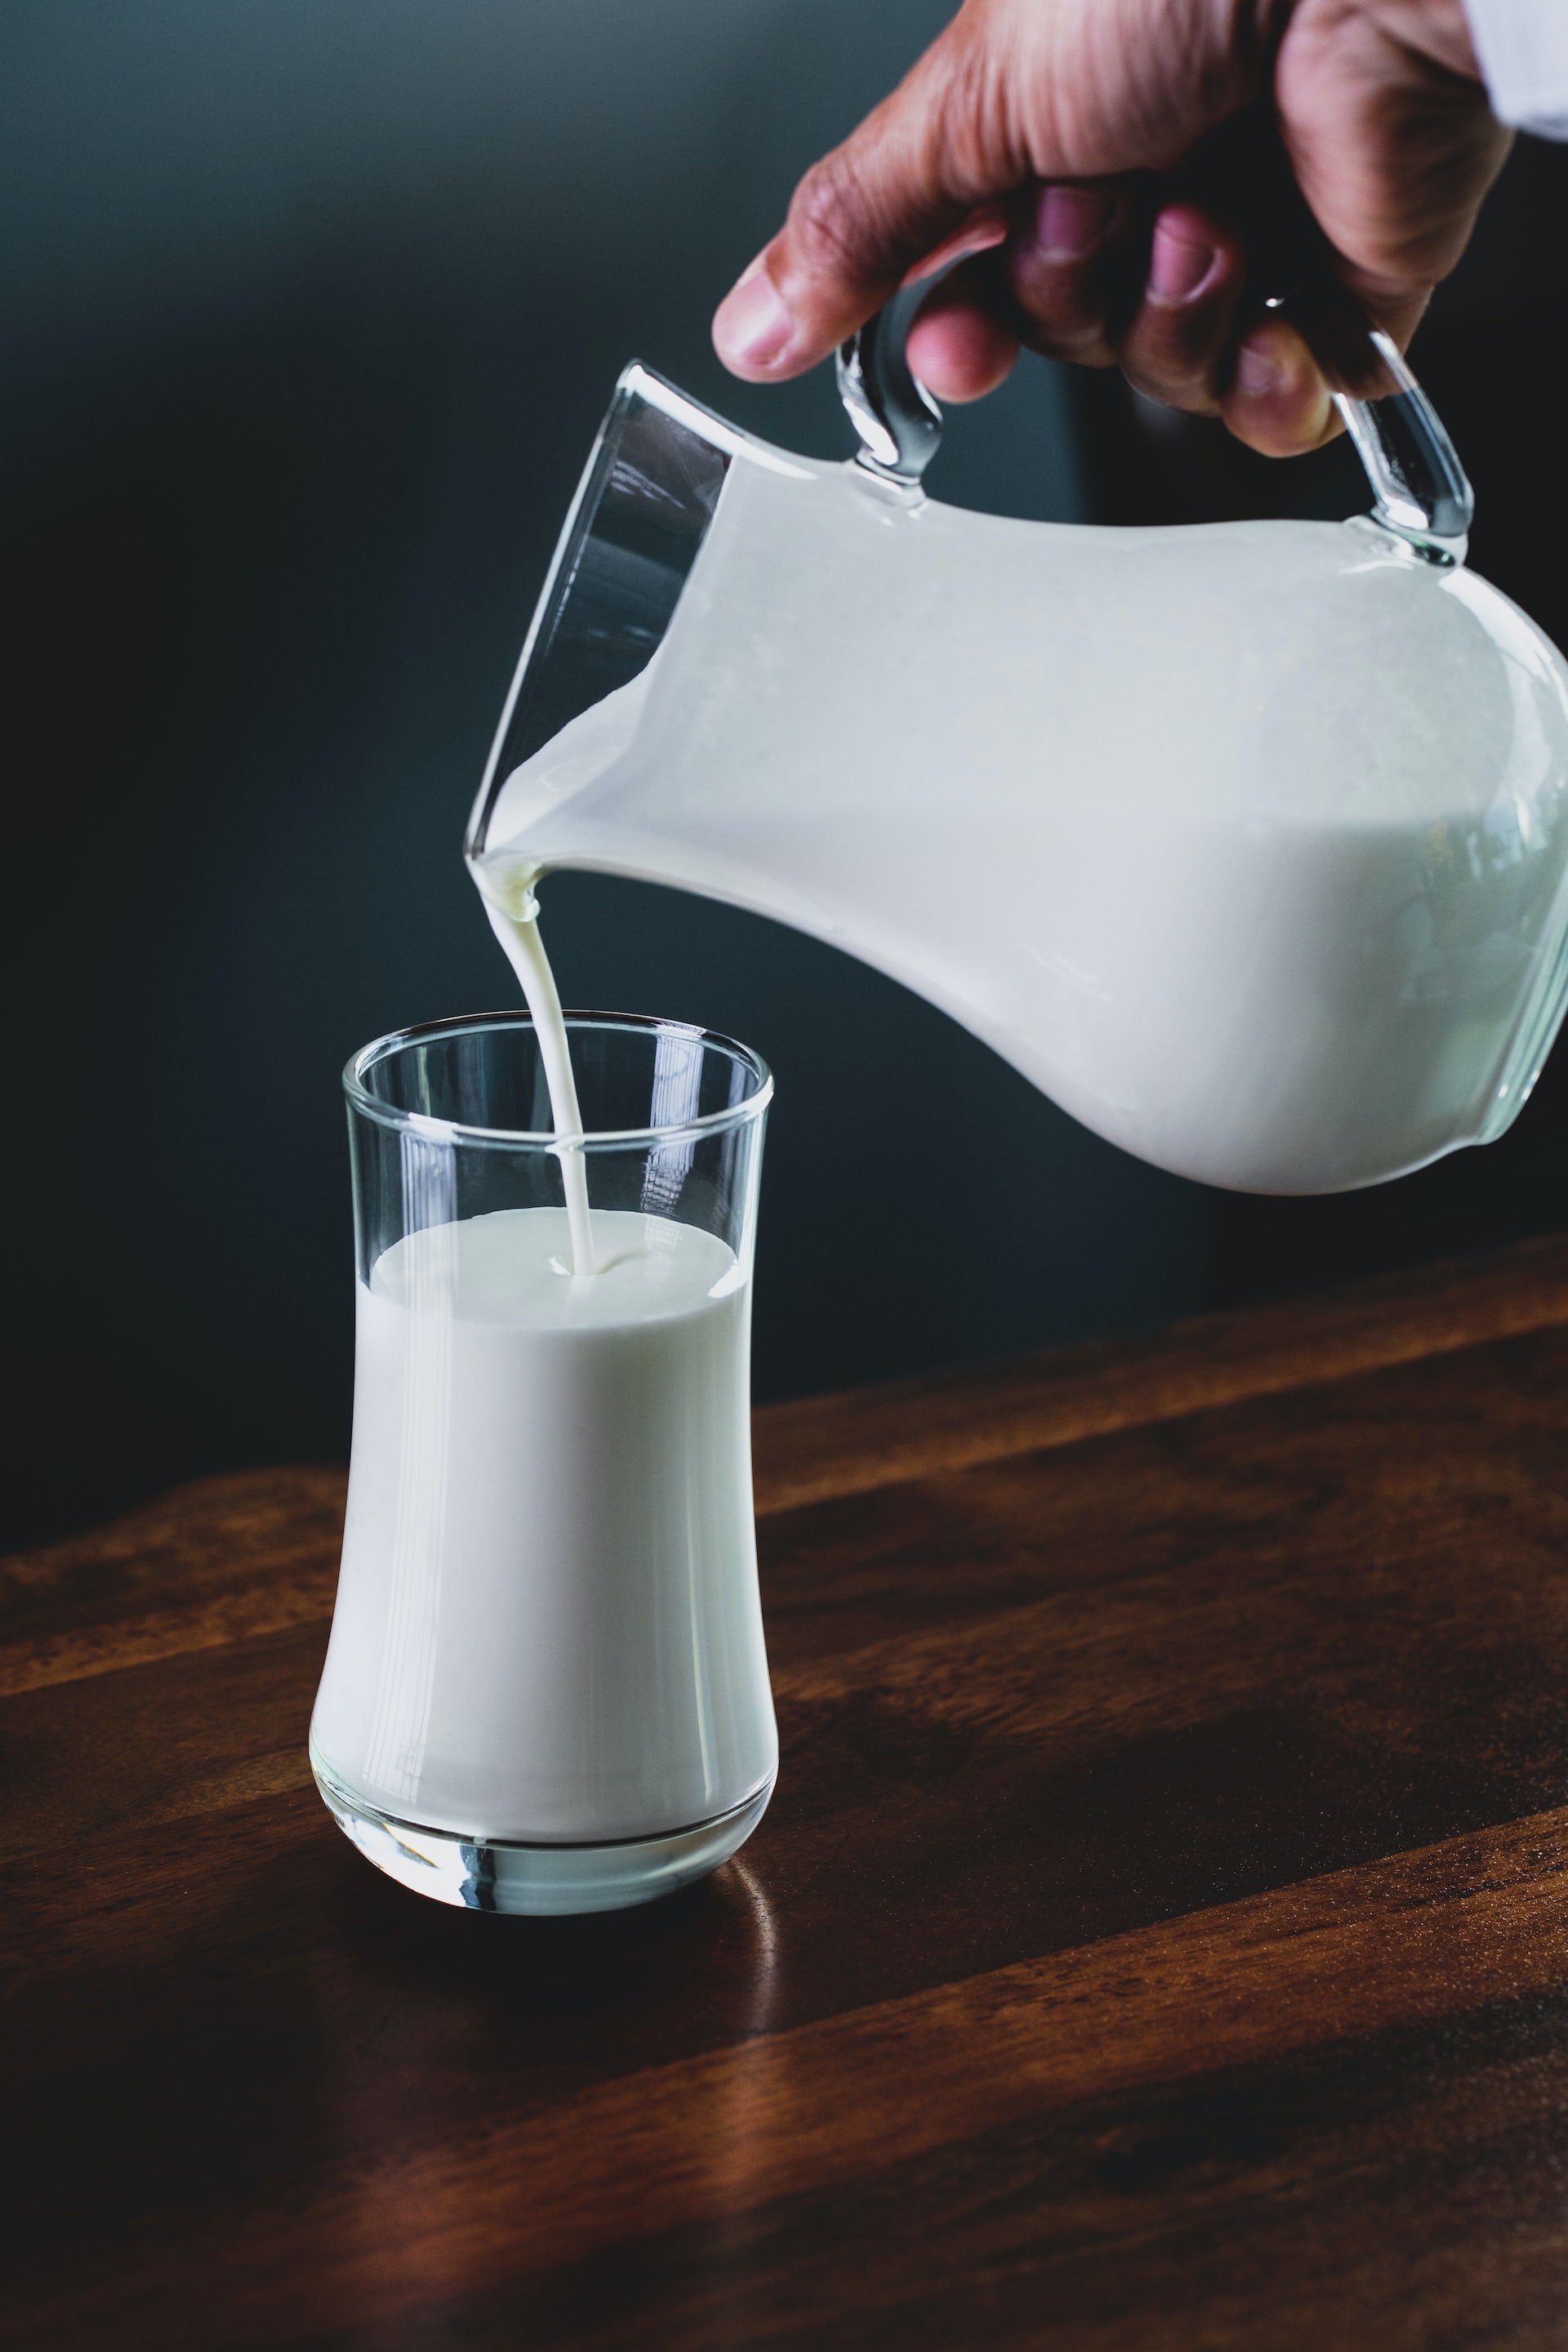 Beus llet desnatada? Aquests són els motius per fer-ho